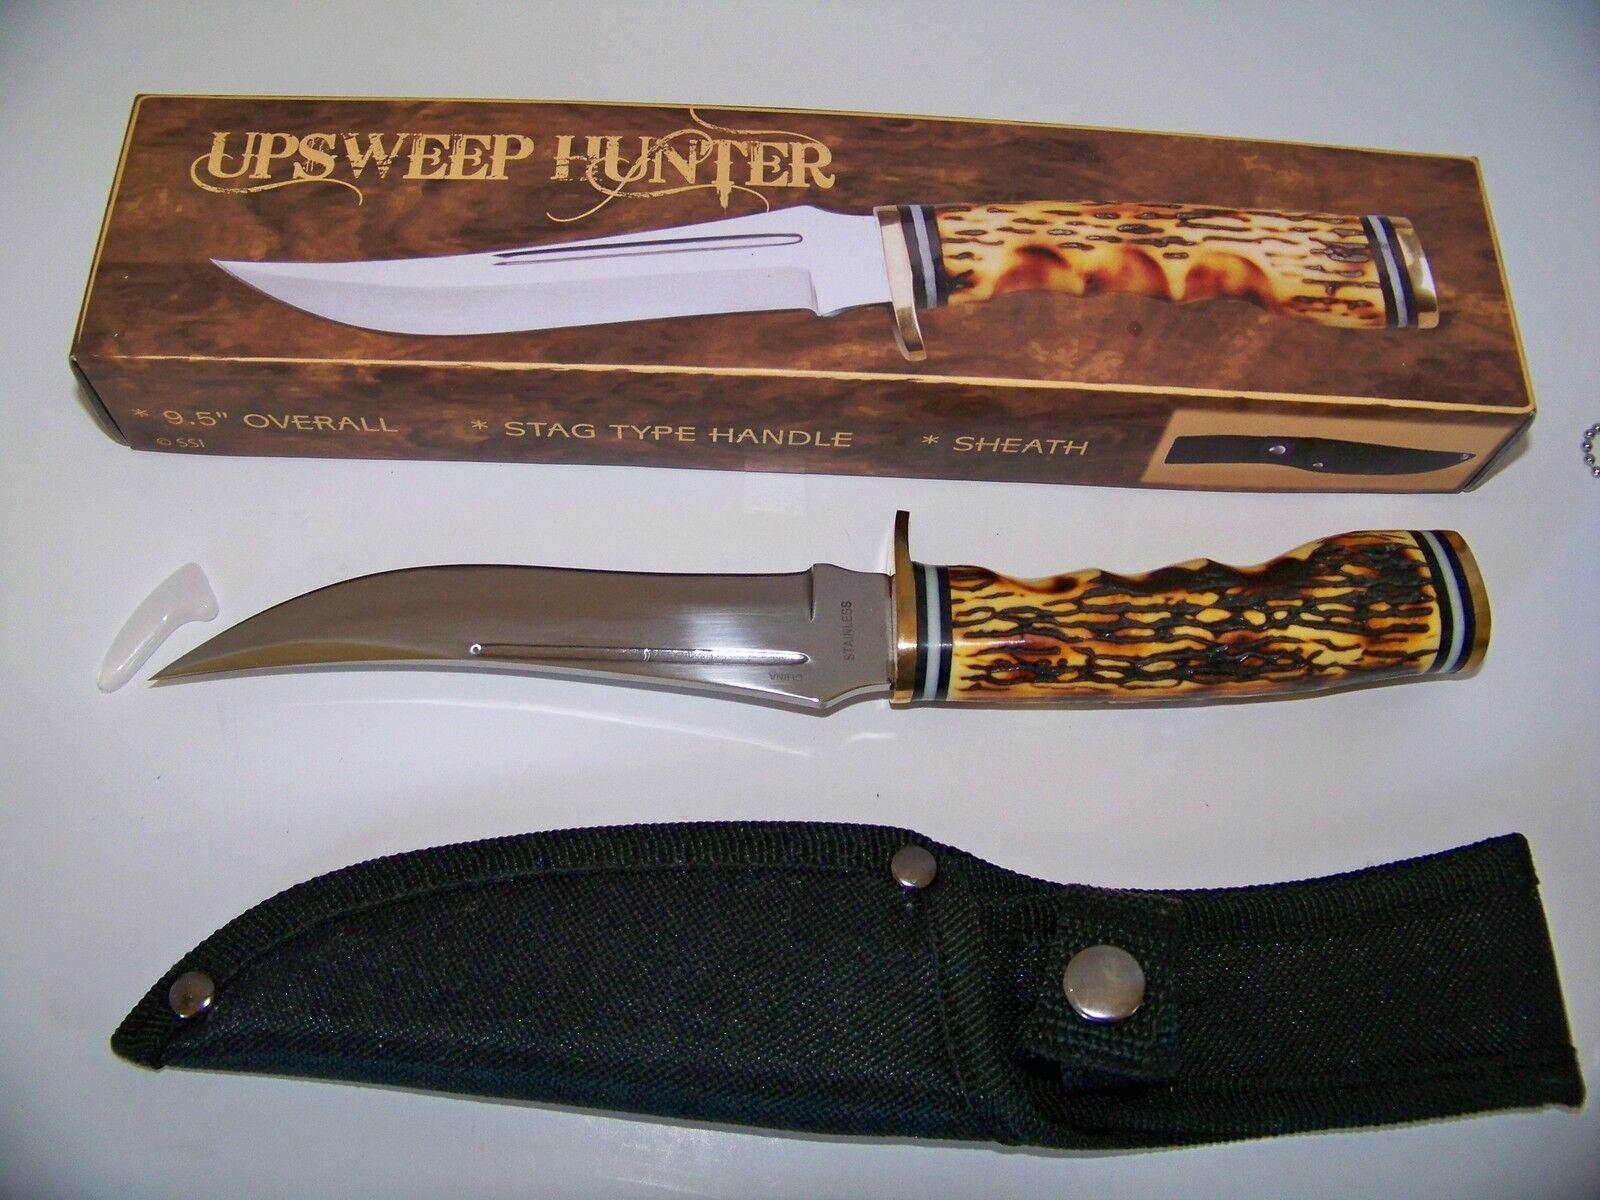 Upswept Hunter Stag Knife Skinner Survival Knife Razor Sharp 9.5” Fixed Blade